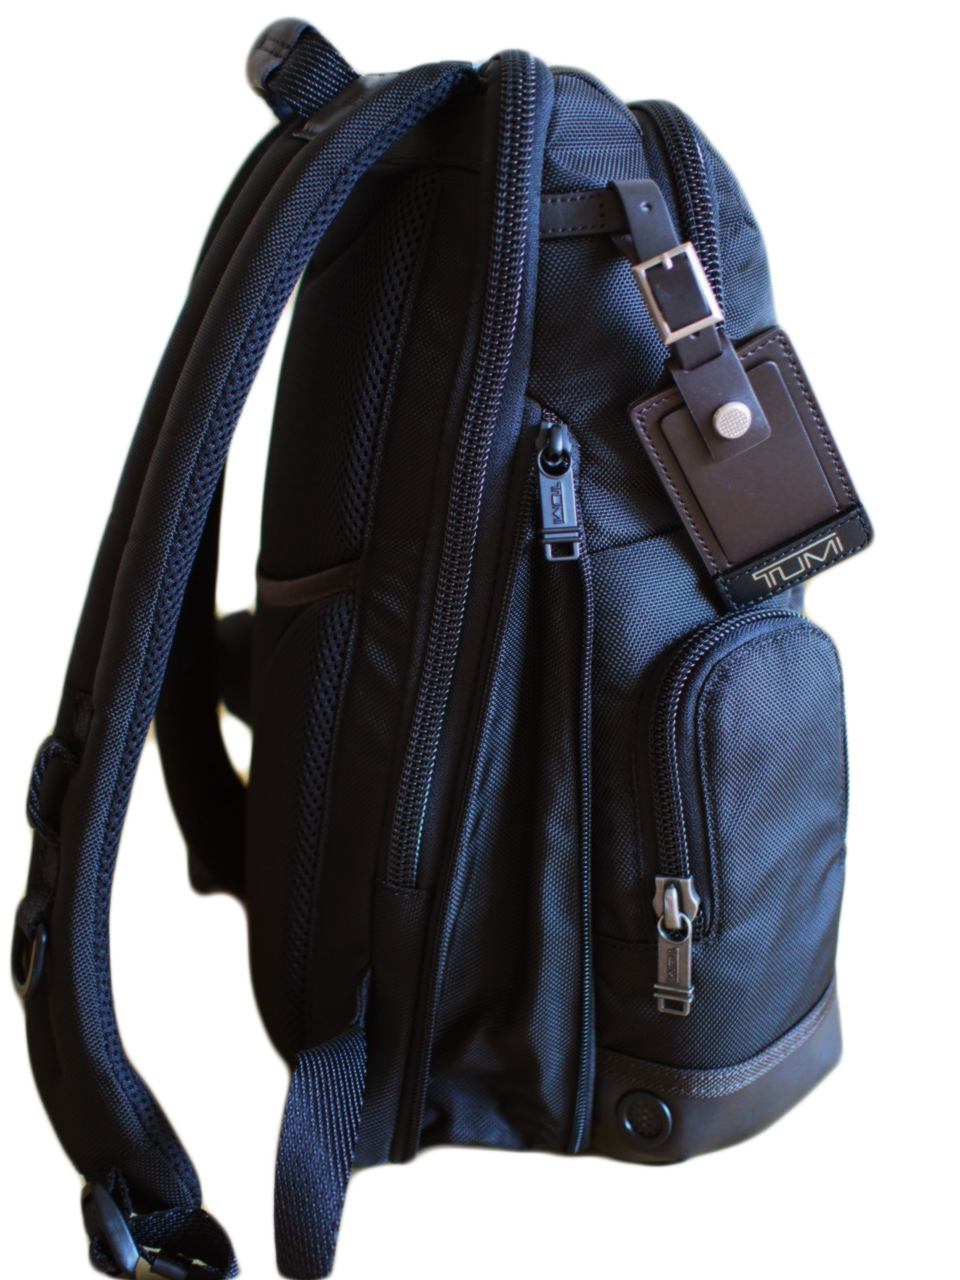 TUMIのバッグの選び方「リュック編」。あなたはバックパックに何を求め 